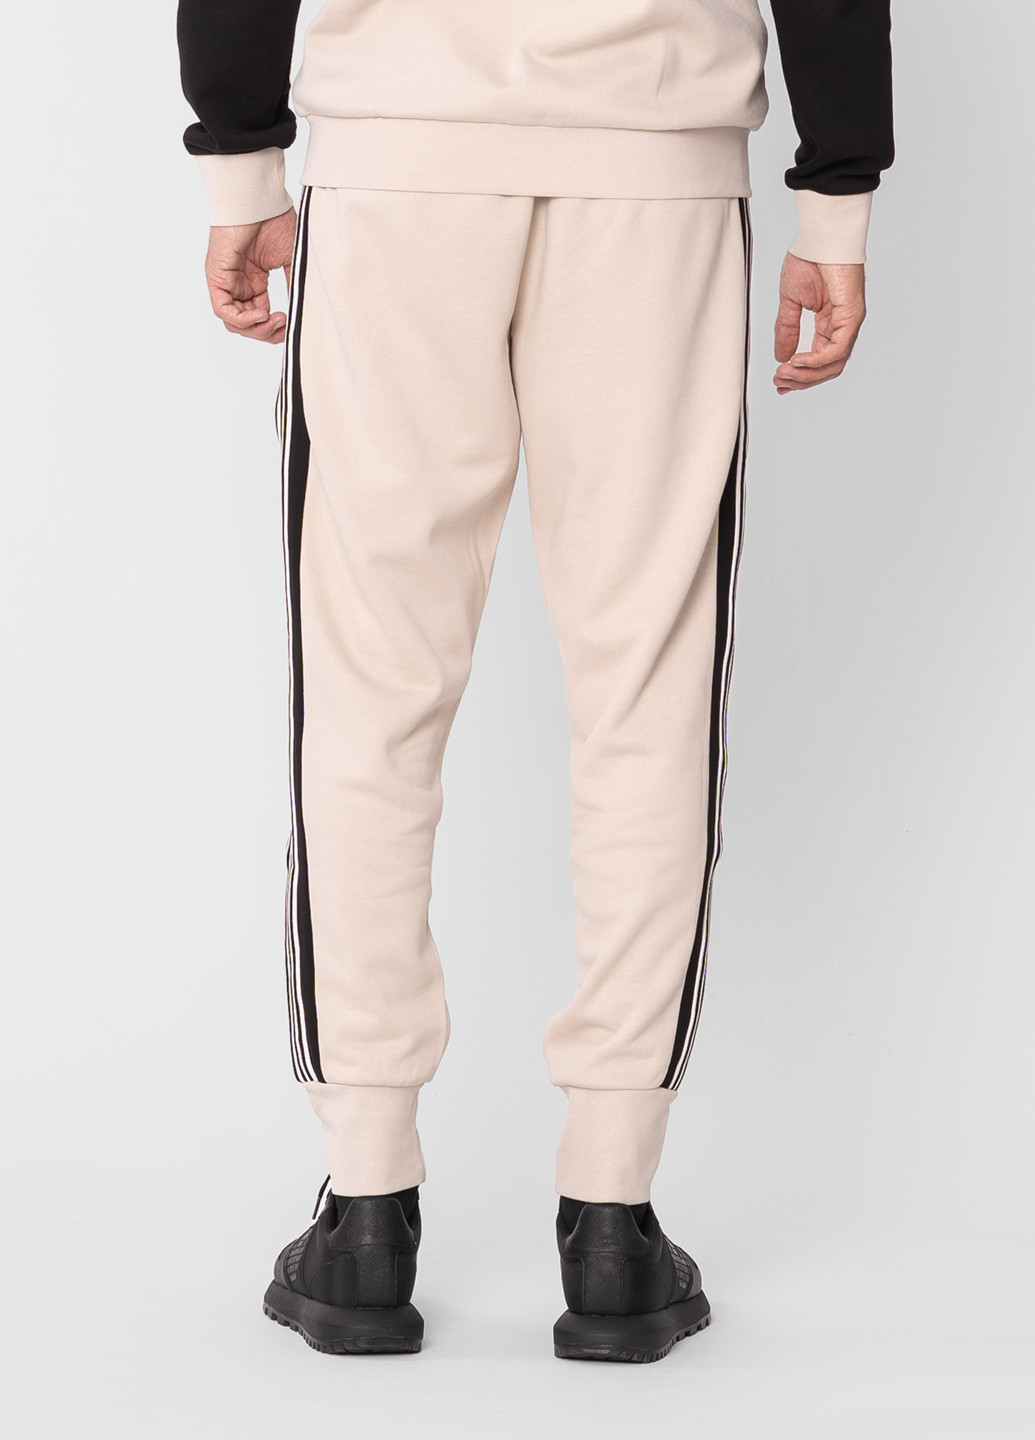 Бежевые кэжуал зимние брюки Emporio Armani